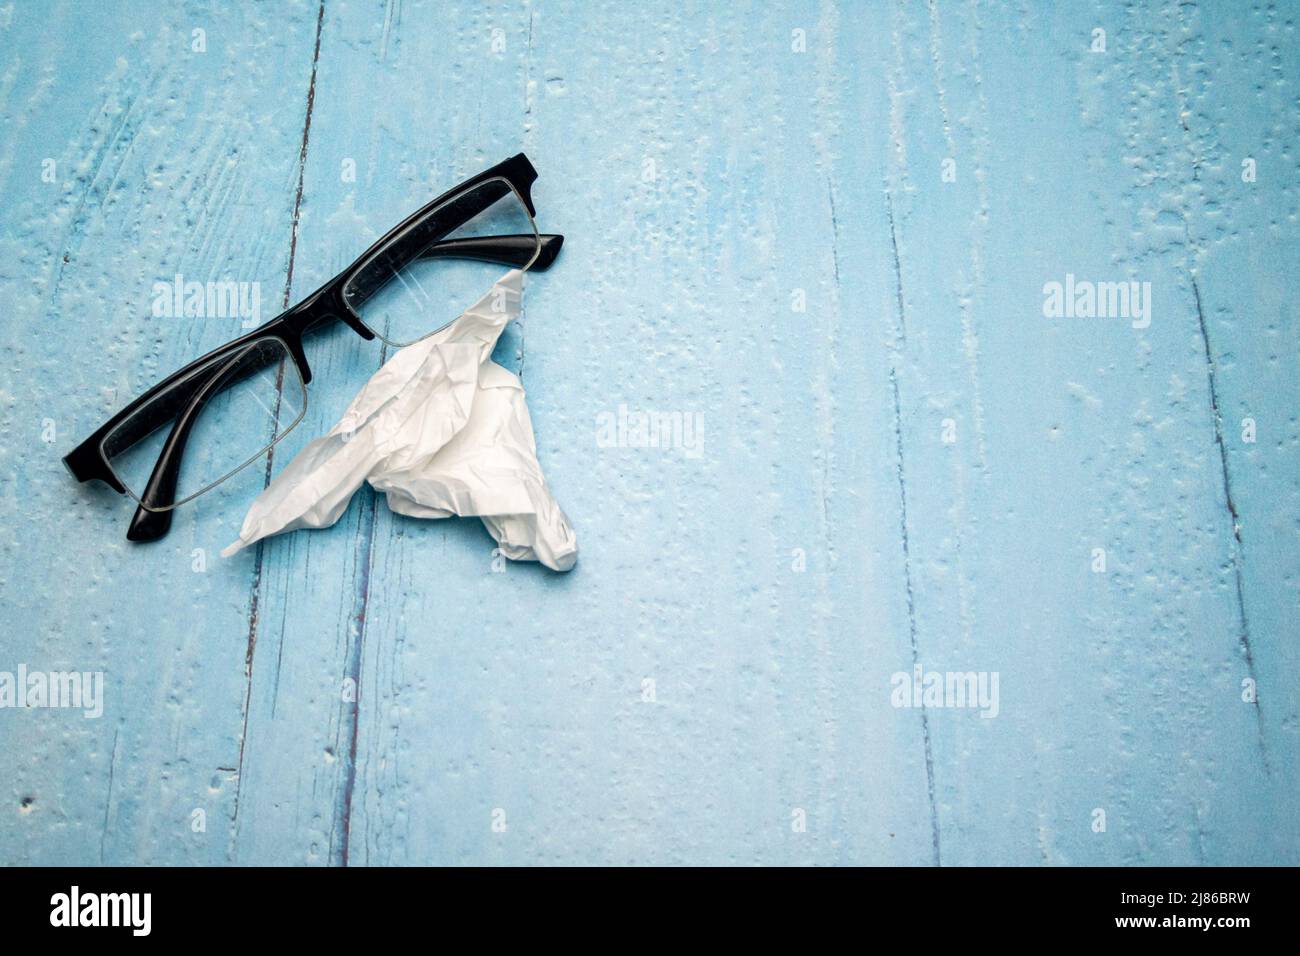 Draufsicht auf Lesebrille mit schwarzen Bügeln und zerknittertem Brillenreinigungstuch auf hellblau lackierter Holzoberfläche Stockfoto